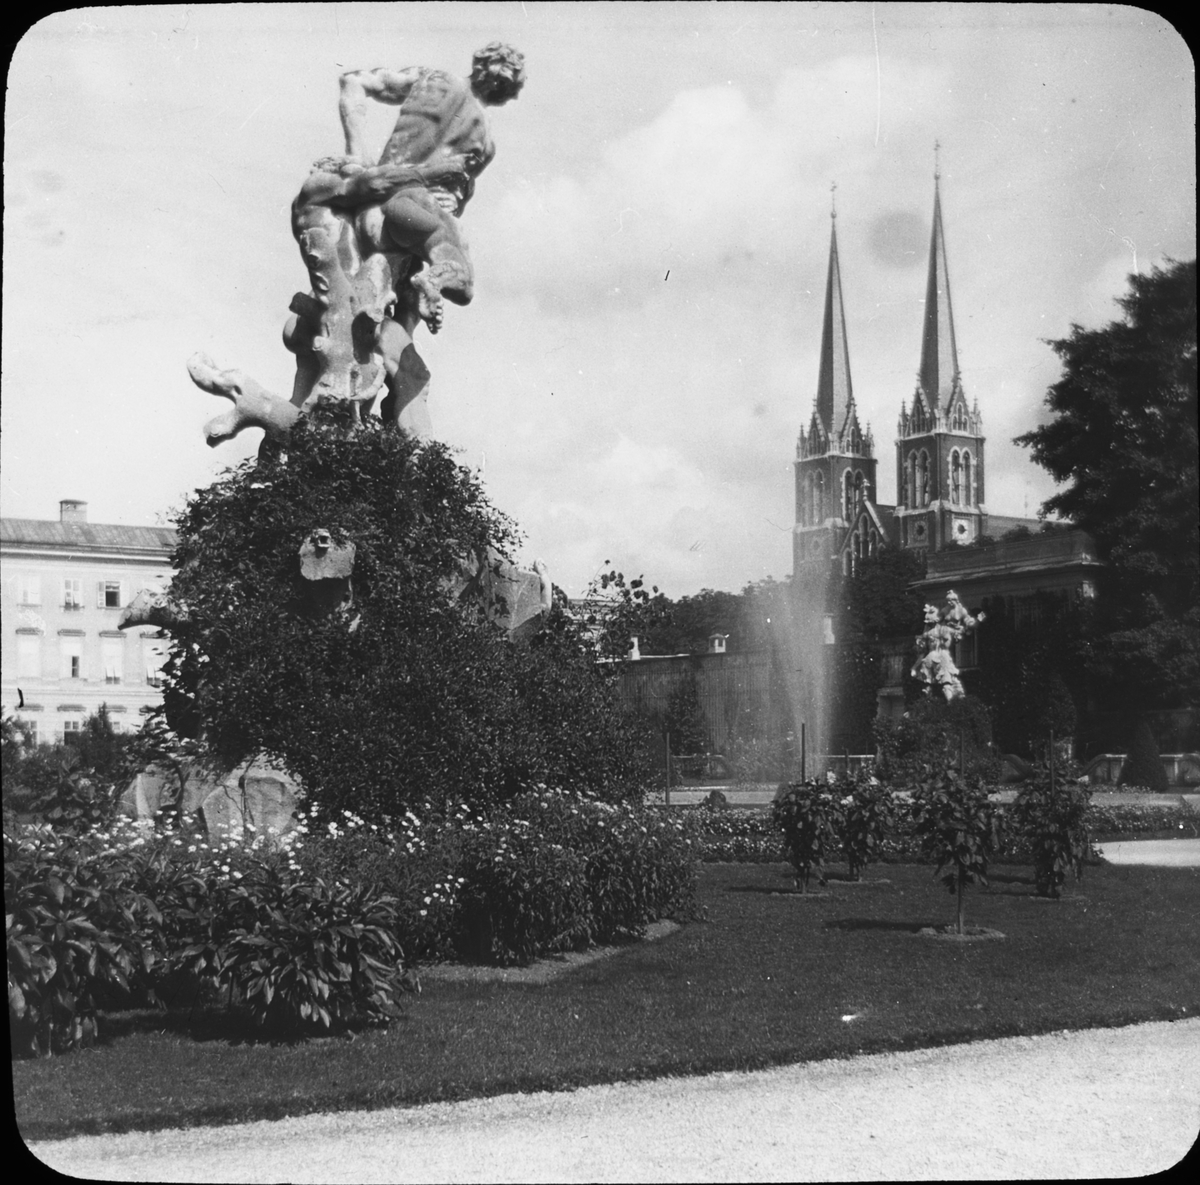 Skioptikonbild med motiv av skulptur i parken Mirabellgarten i Salzburg.
Bilden har förvarats i kartong märkt: Höstresan 1909. Wien 3. Salzburg 6. No 9. Text på bild: "Mirabellgarten".